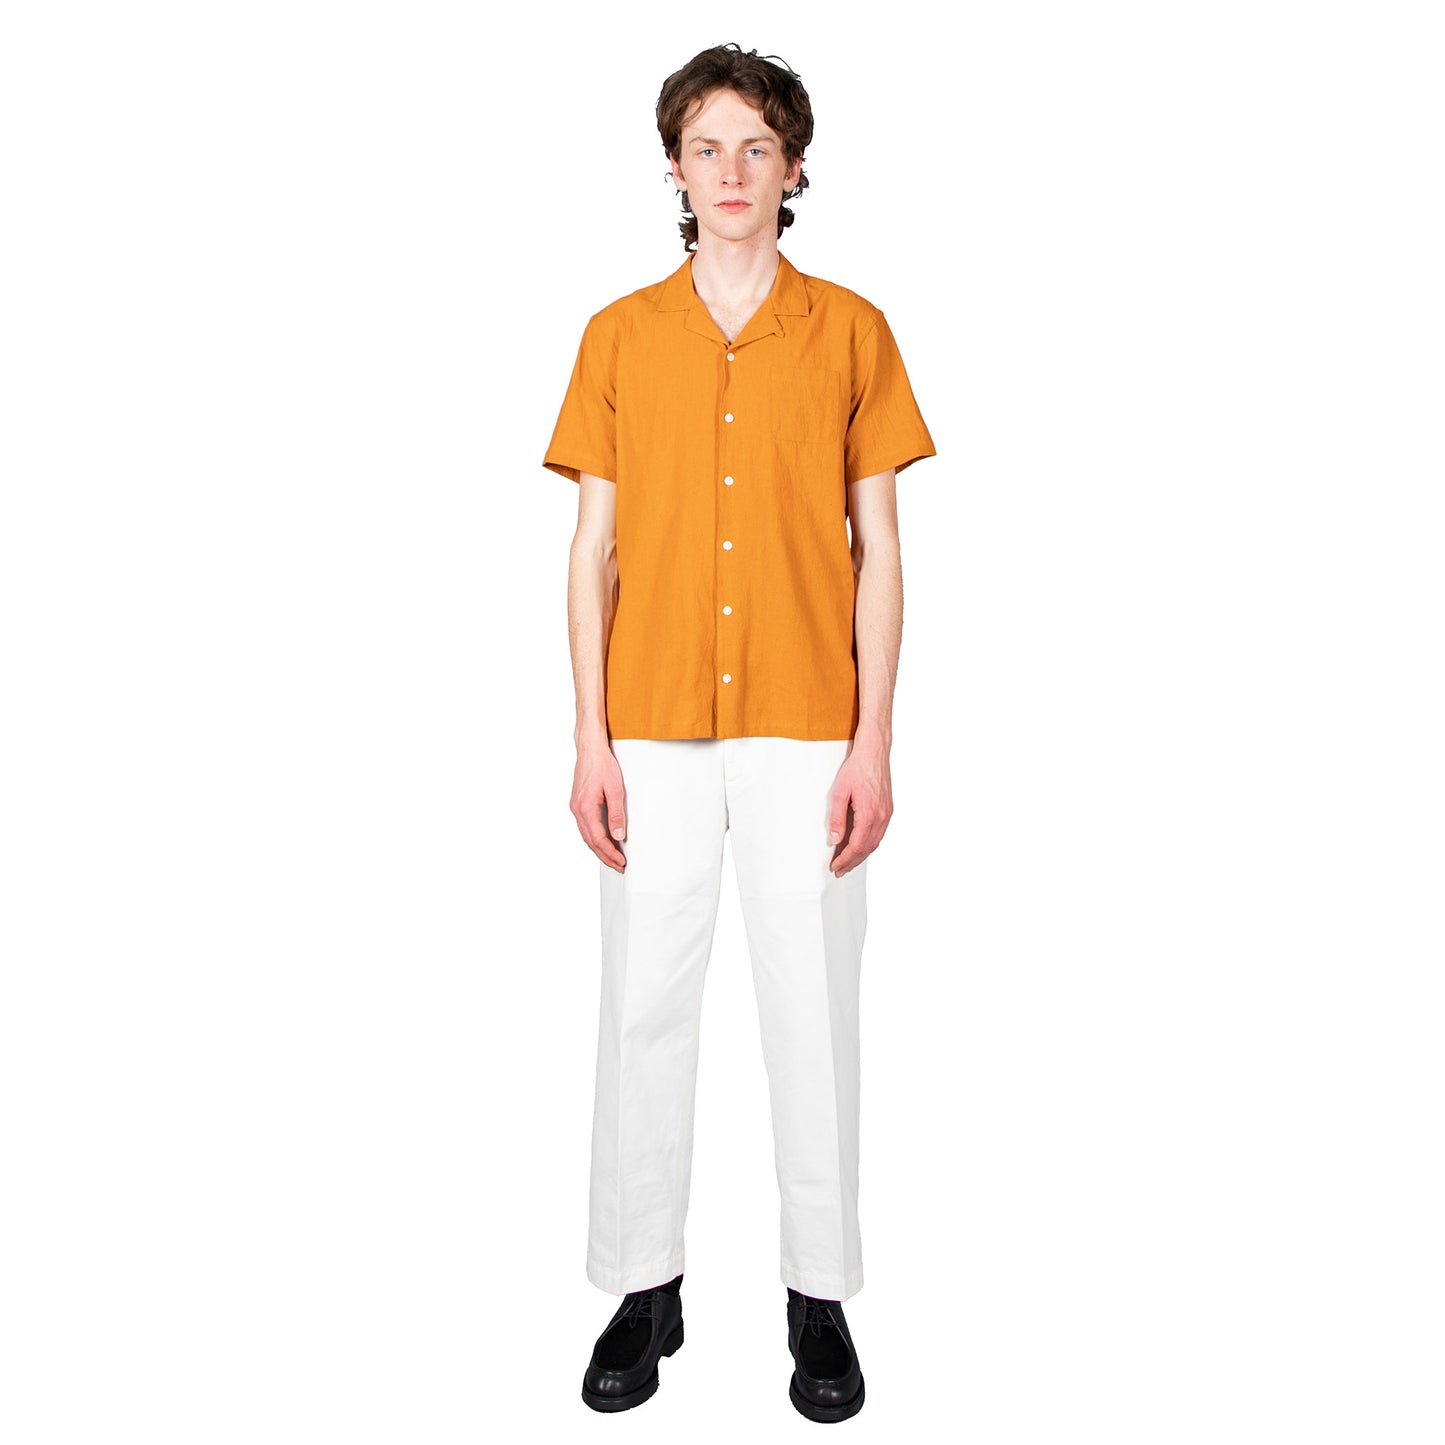 Crammond Shirt - Survival Orange